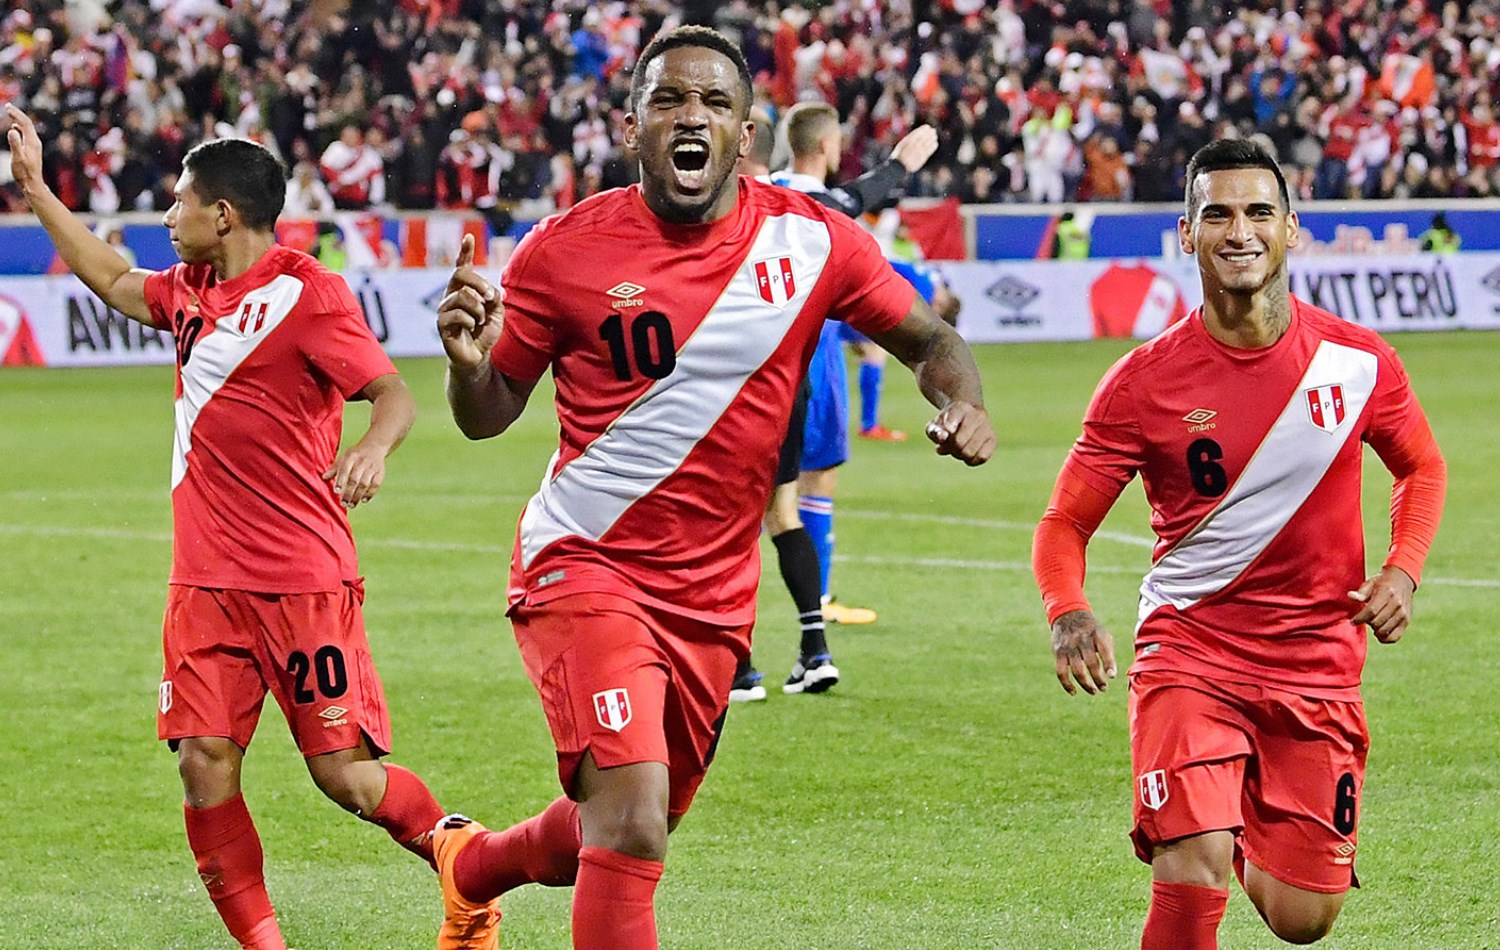 Perú - un país fanático del fútbol